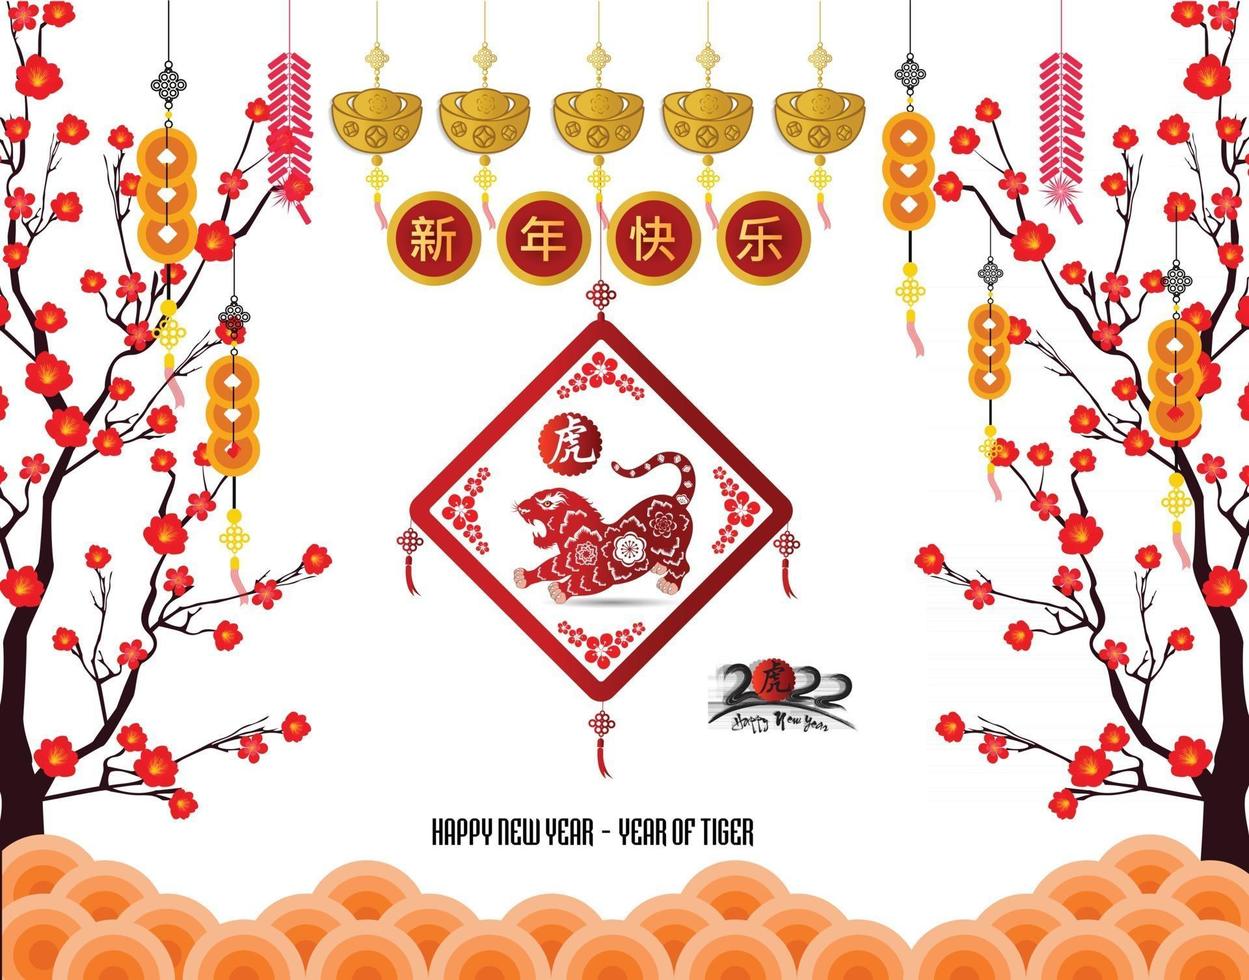 feliz año nuevo chino 2022 - año del tigre. vector